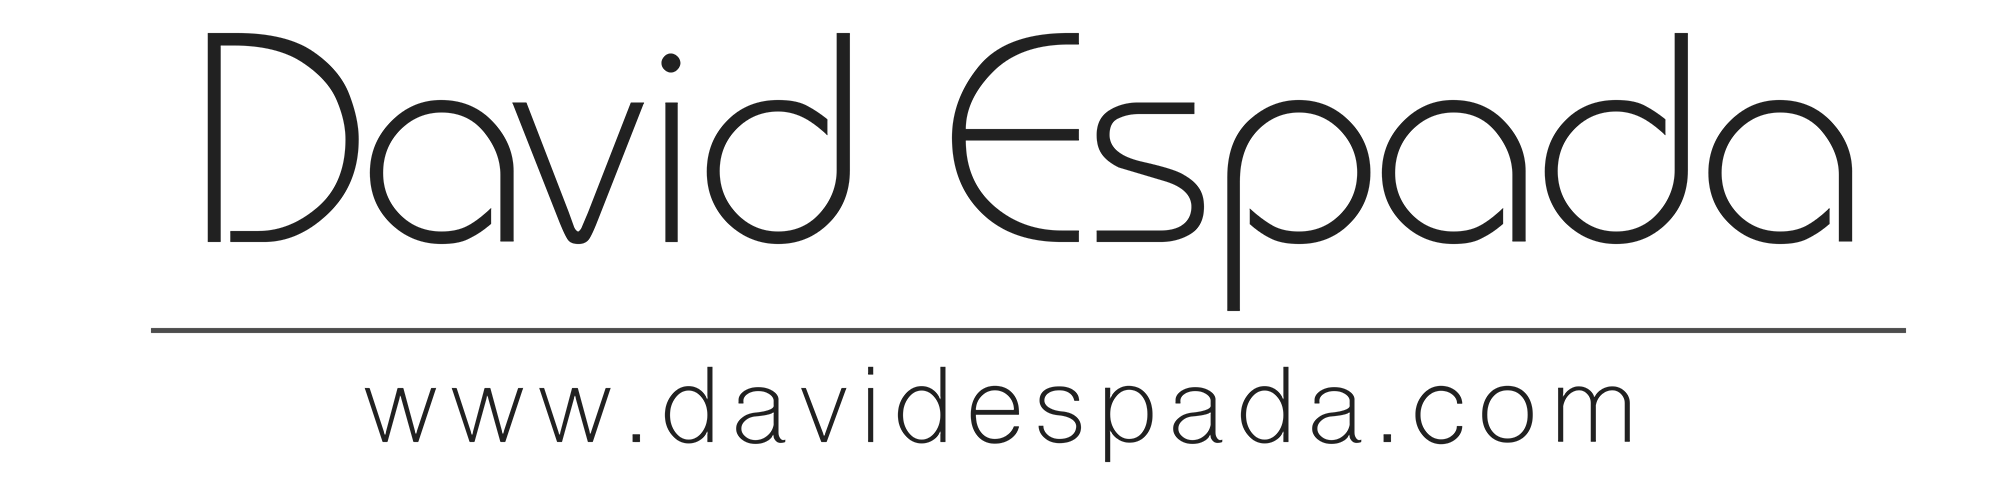 DavidEspada.com